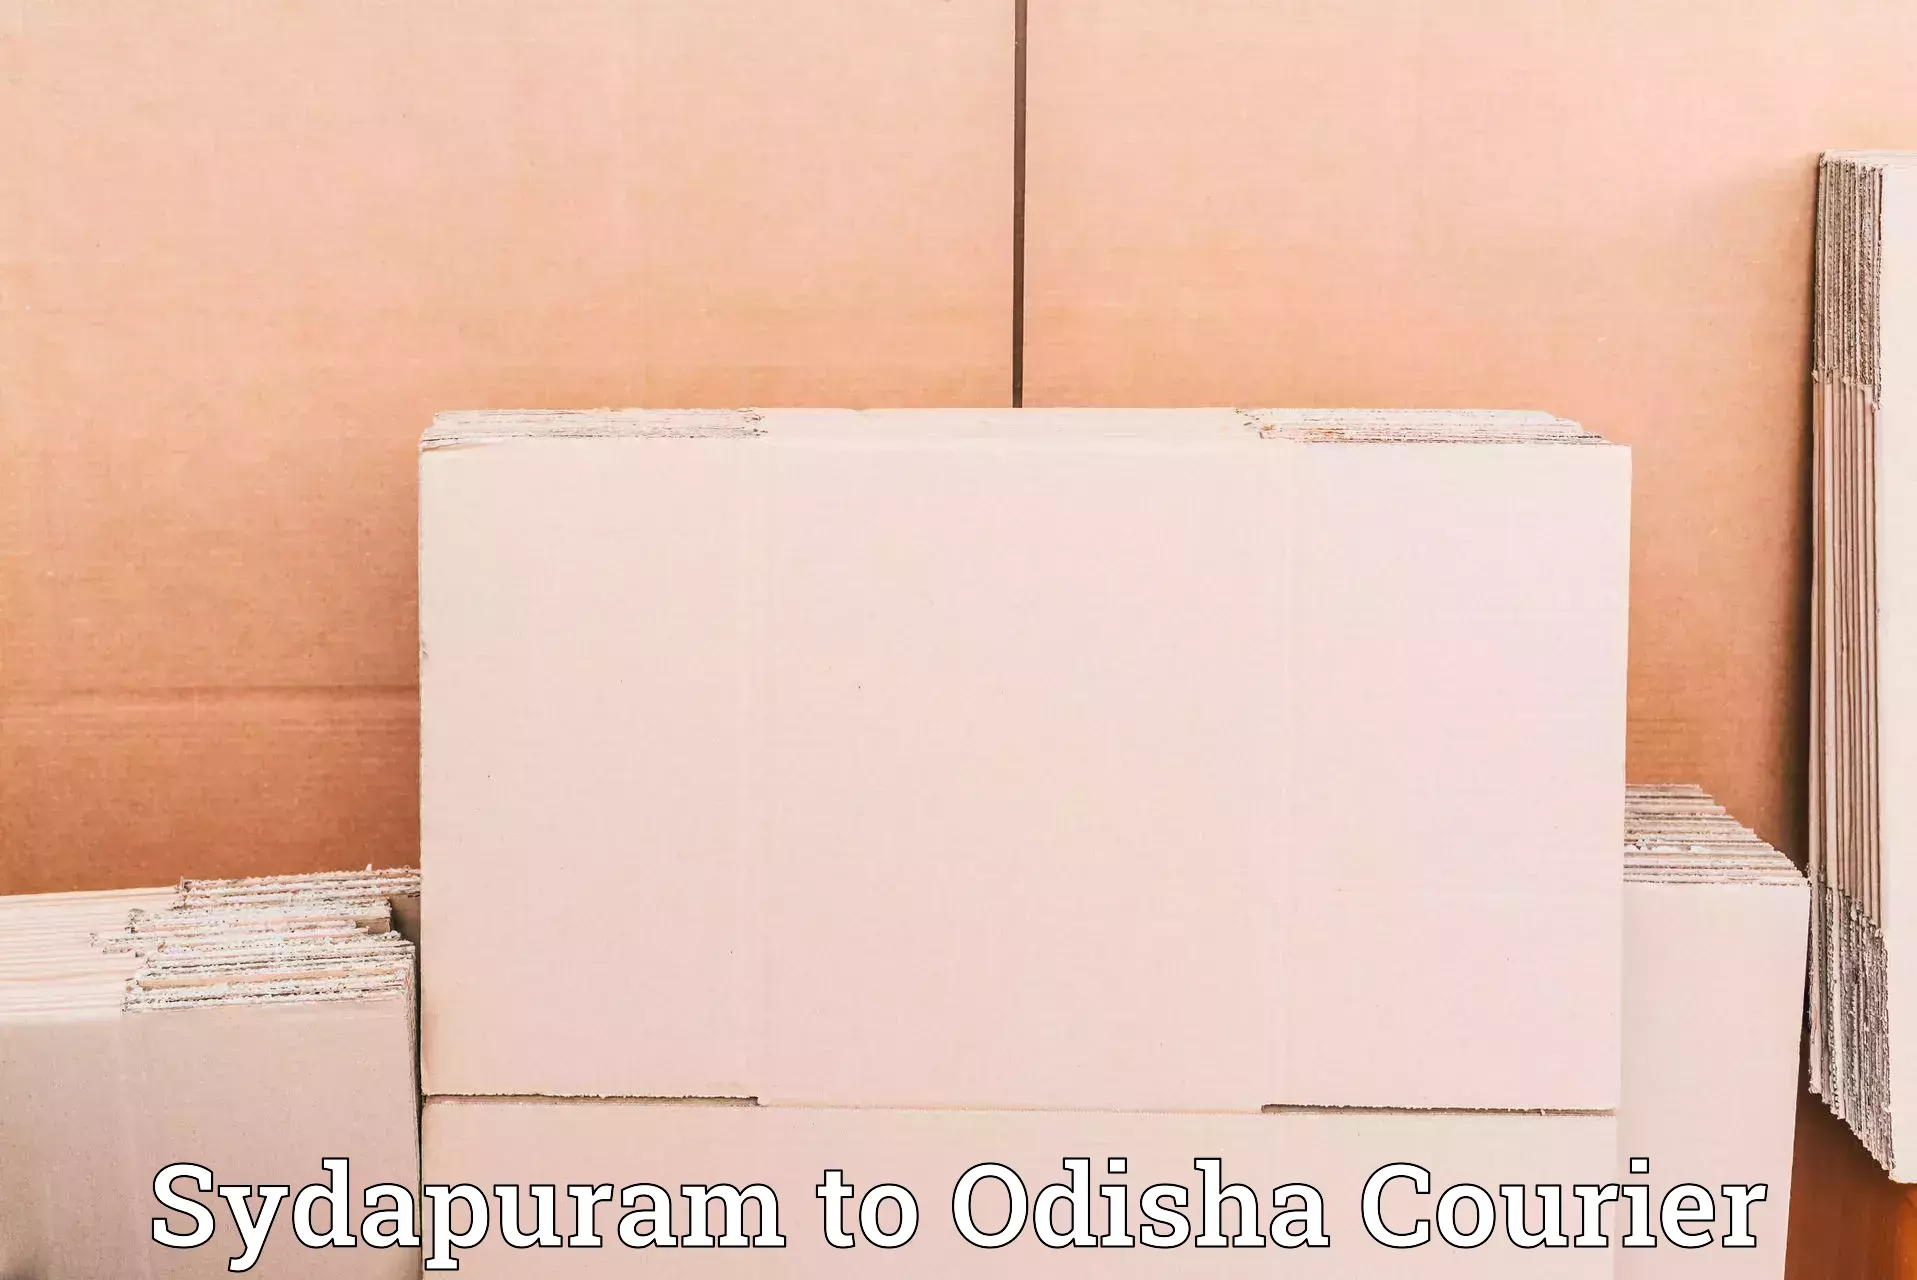 Professional courier services Sydapuram to Gunupur